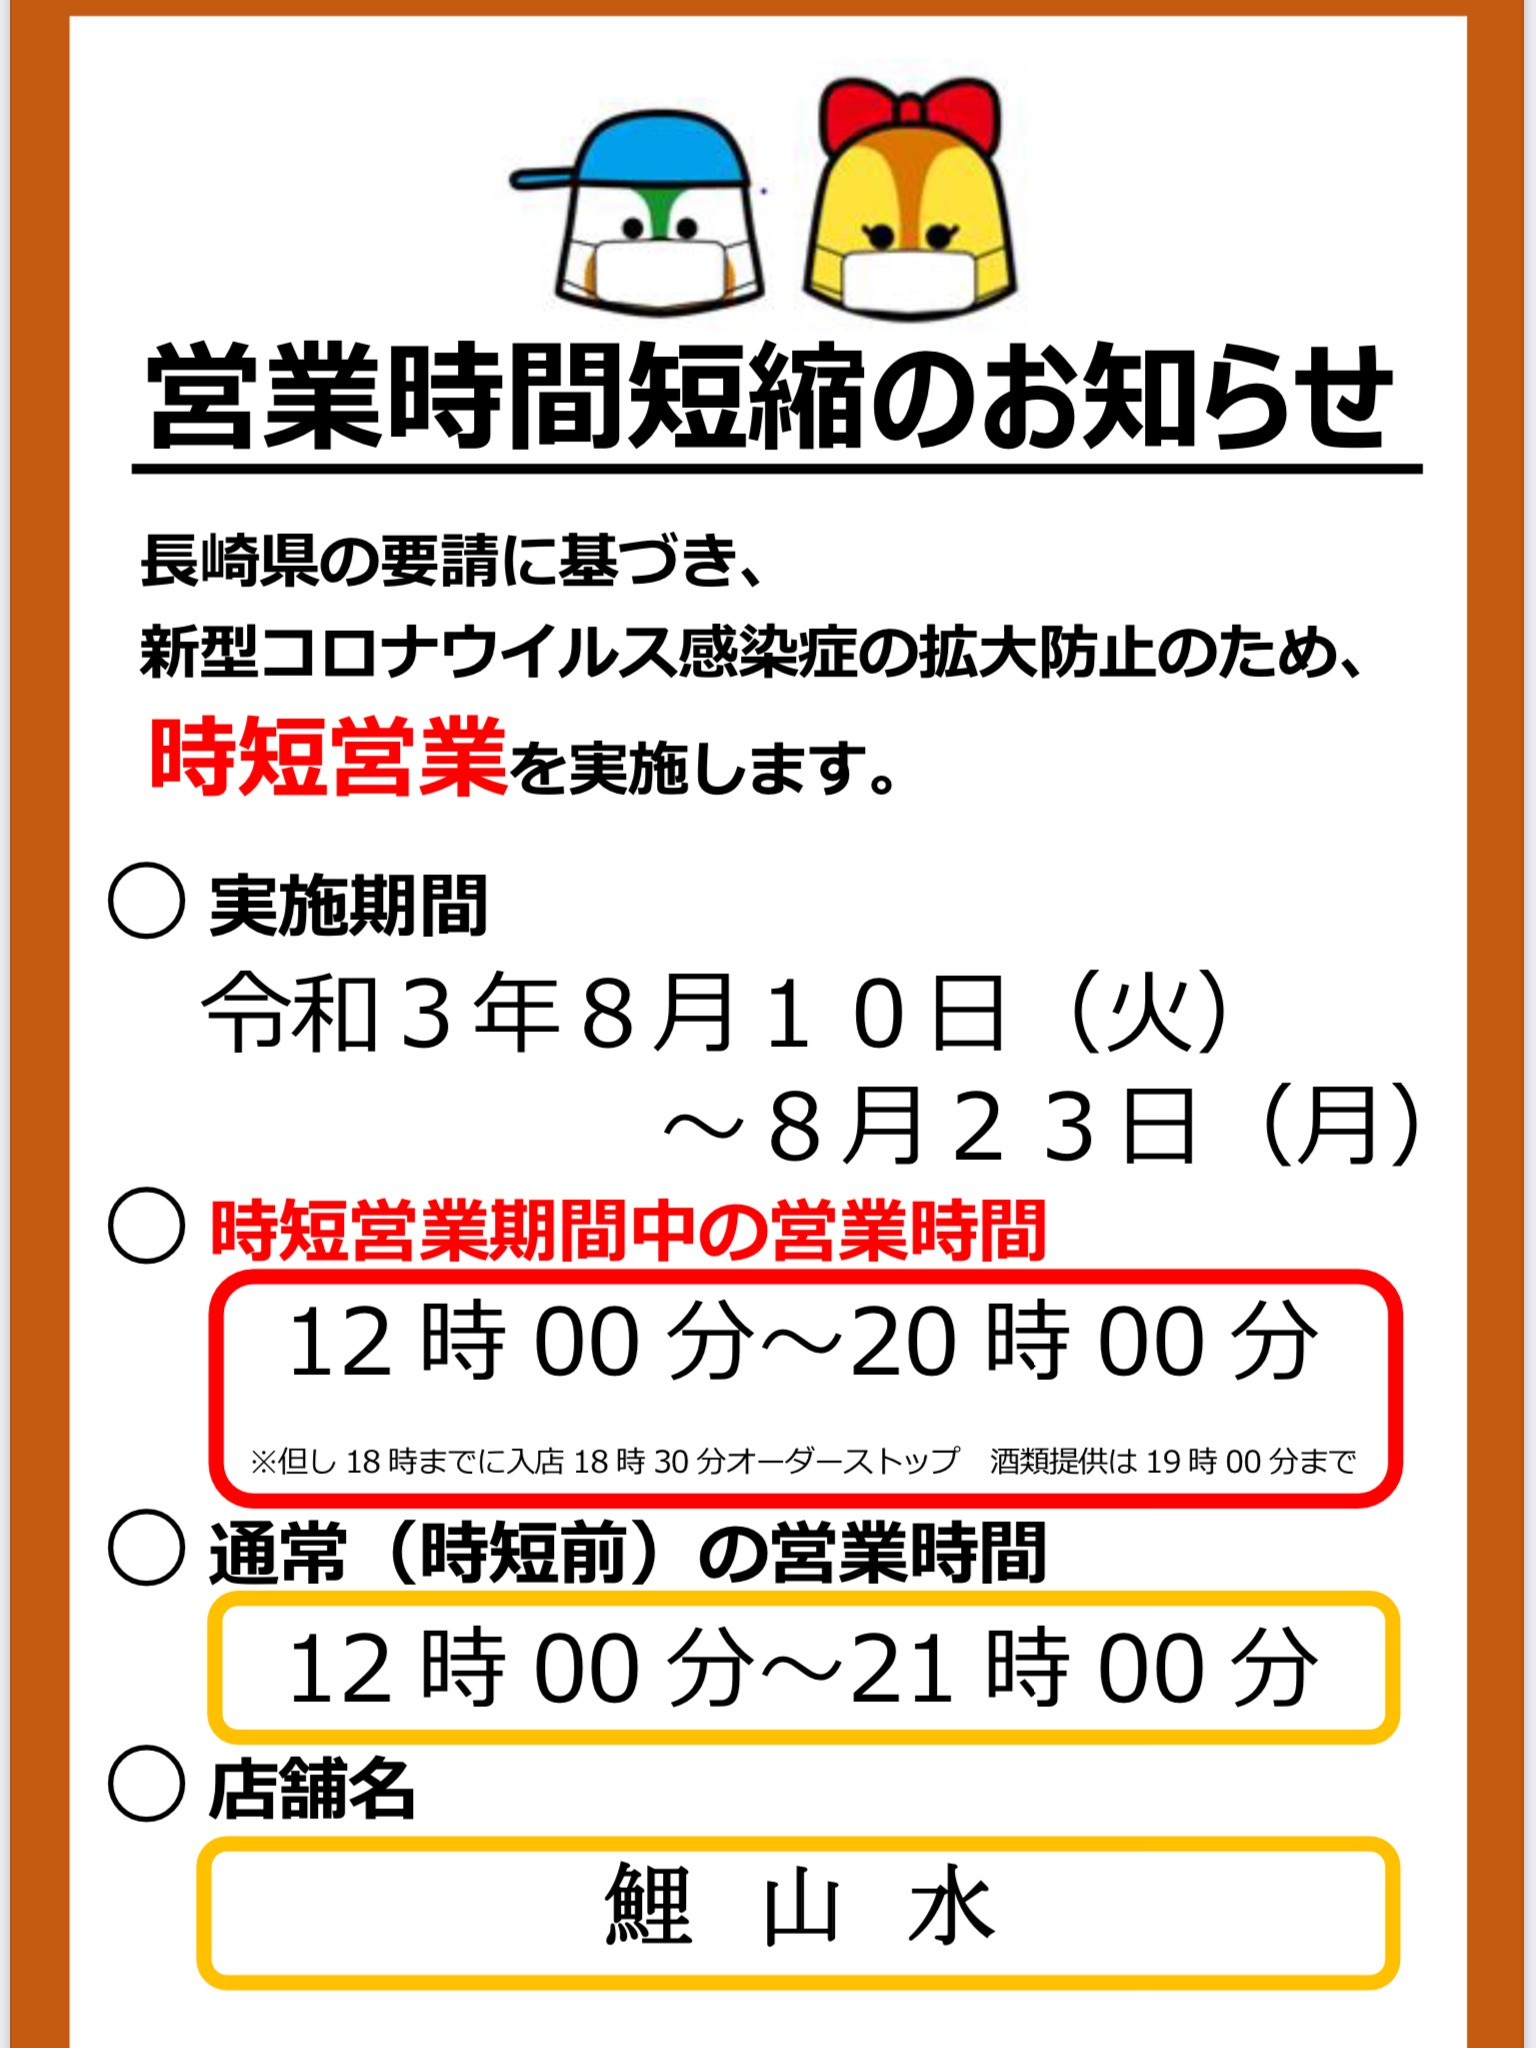 長崎県の要請に基づく営業時間短縮のお知らせ